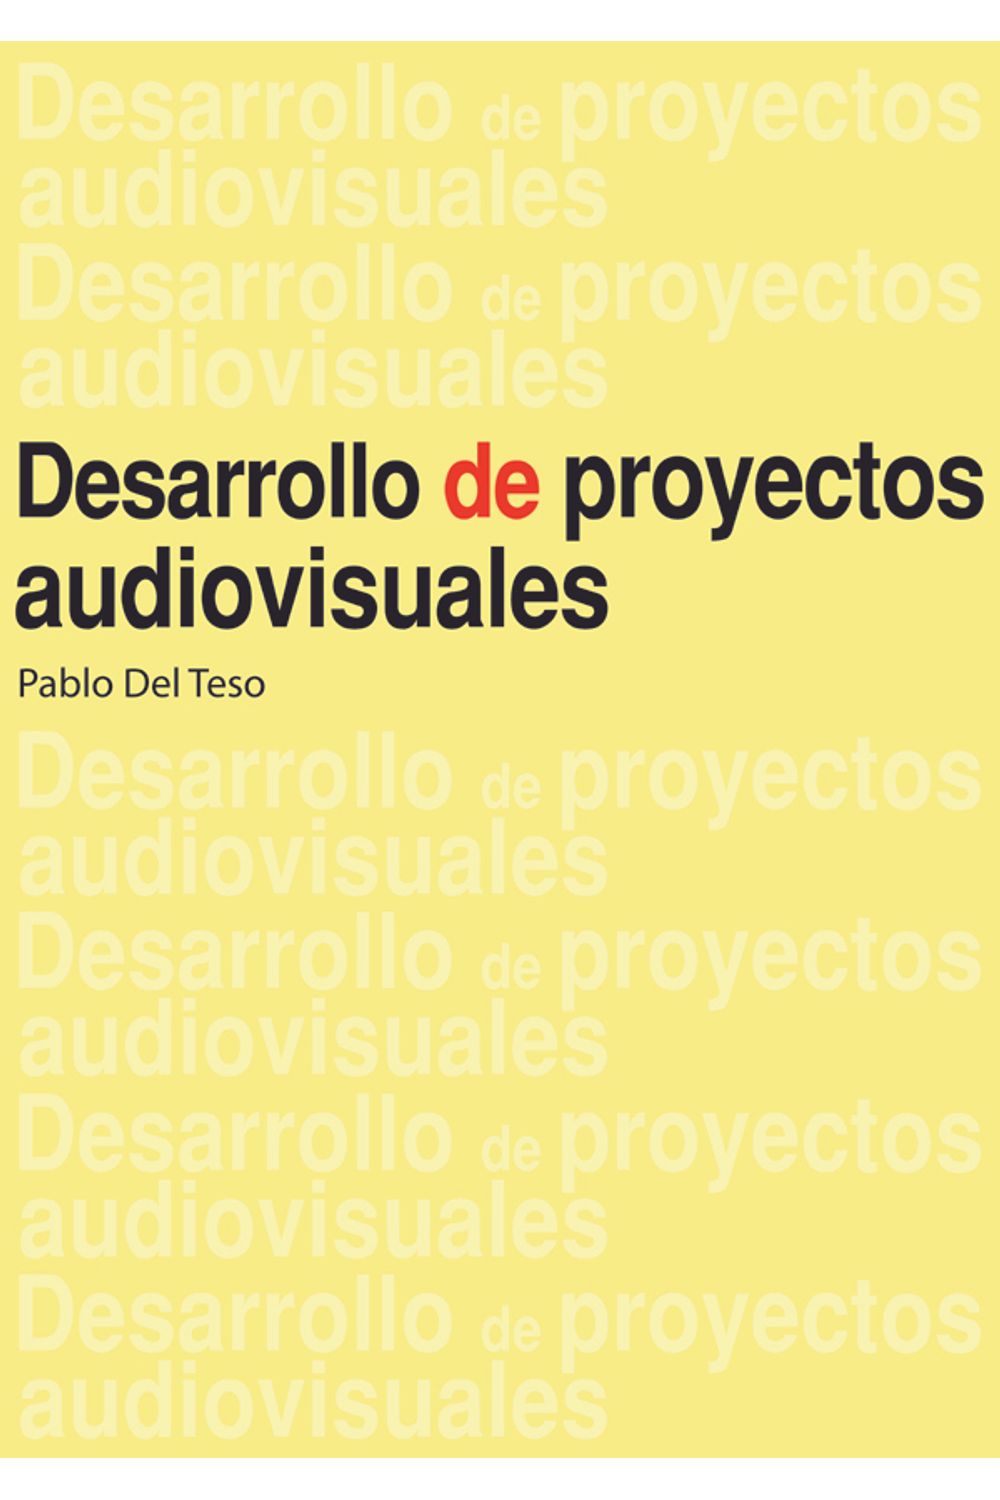 bm-desarrollo-de-proyectos-audiovisuales-nobukodiseno-editorial-9789875843318